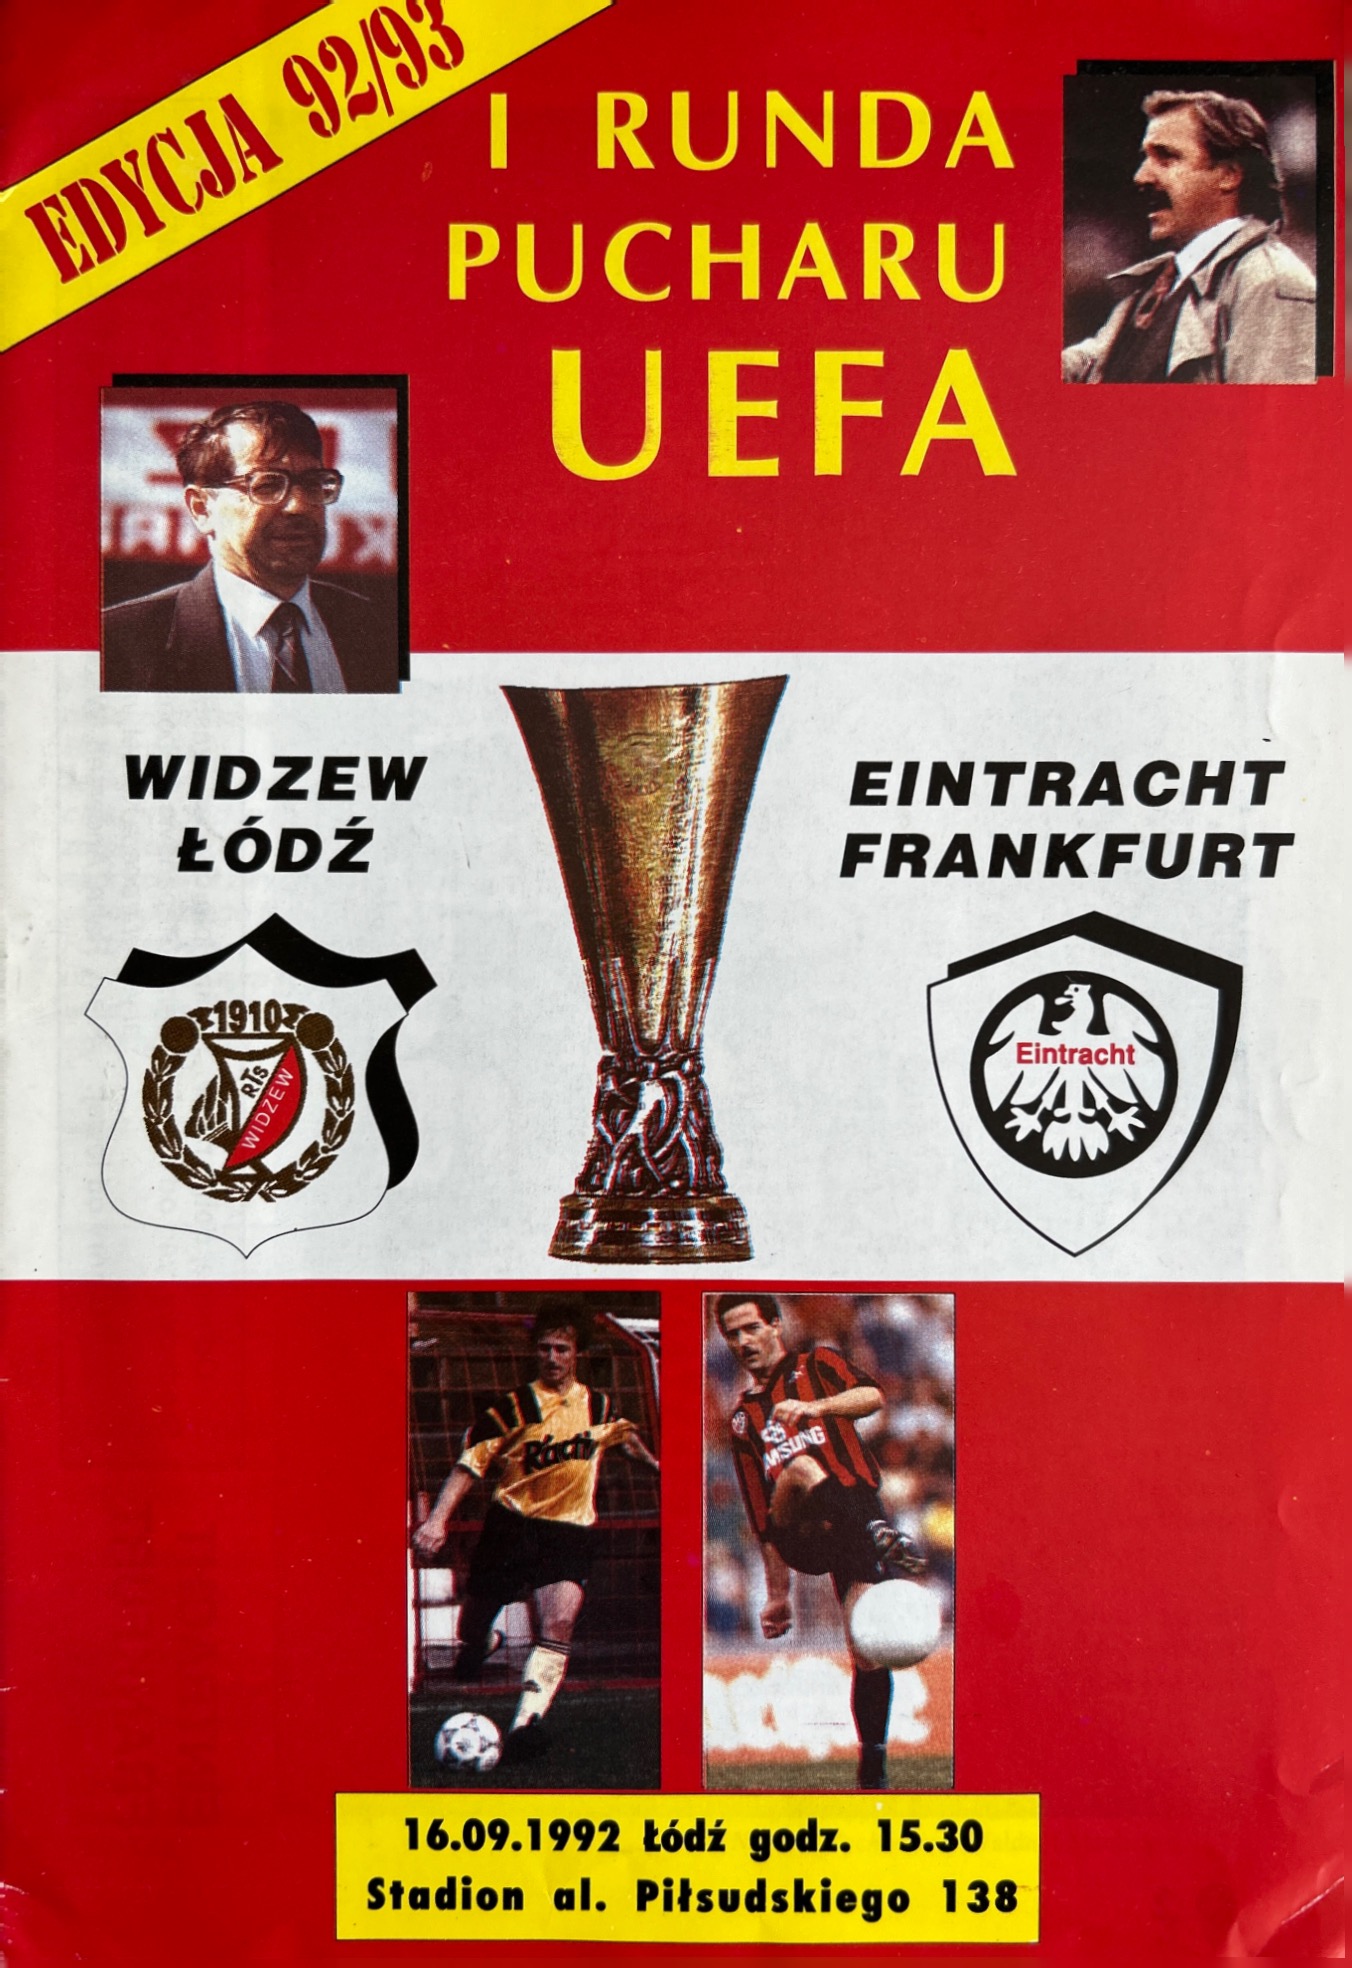 Program meczowy Widzew Łódź - Eintracht Frankfurt 2:2 (16.09.1992)